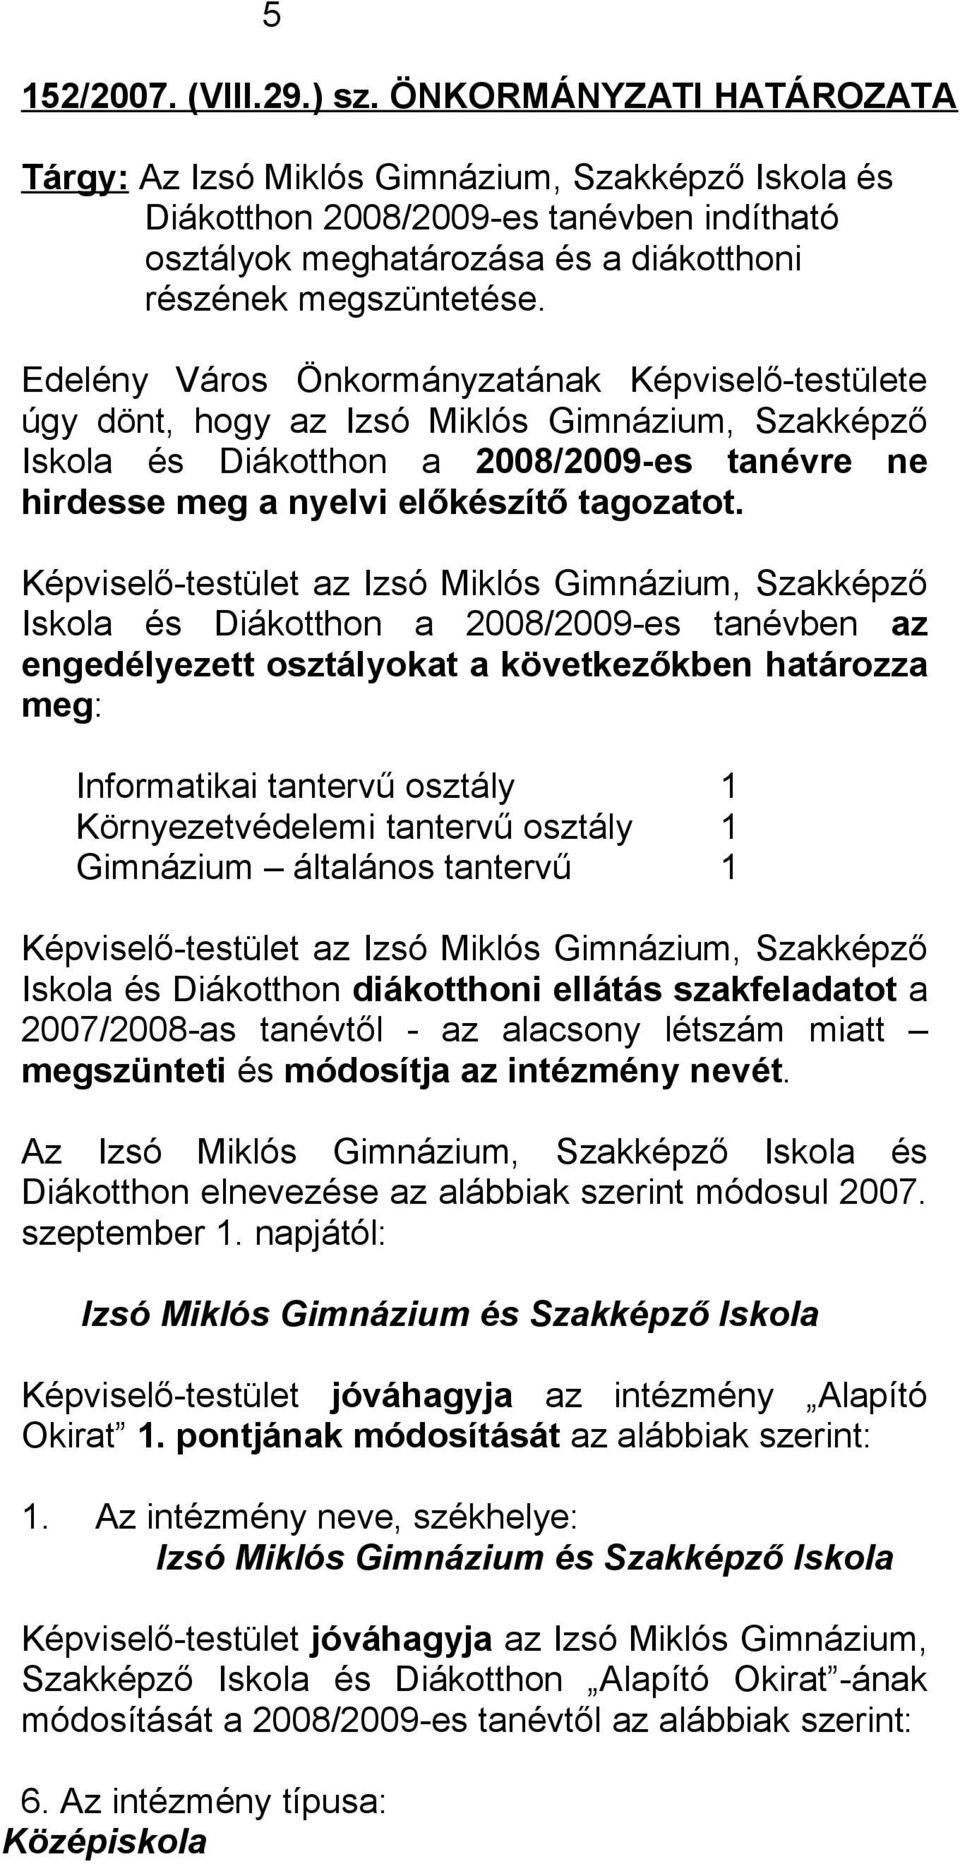 Edelény Város Önkormányzatának Képviselő-testülete úgy dönt, hogy az Izsó Miklós Gimnázium, Szakképző Iskola és Diákotthon a 2008/2009-es tanévre ne hirdesse meg a nyelvi előkészítő tagozatot.